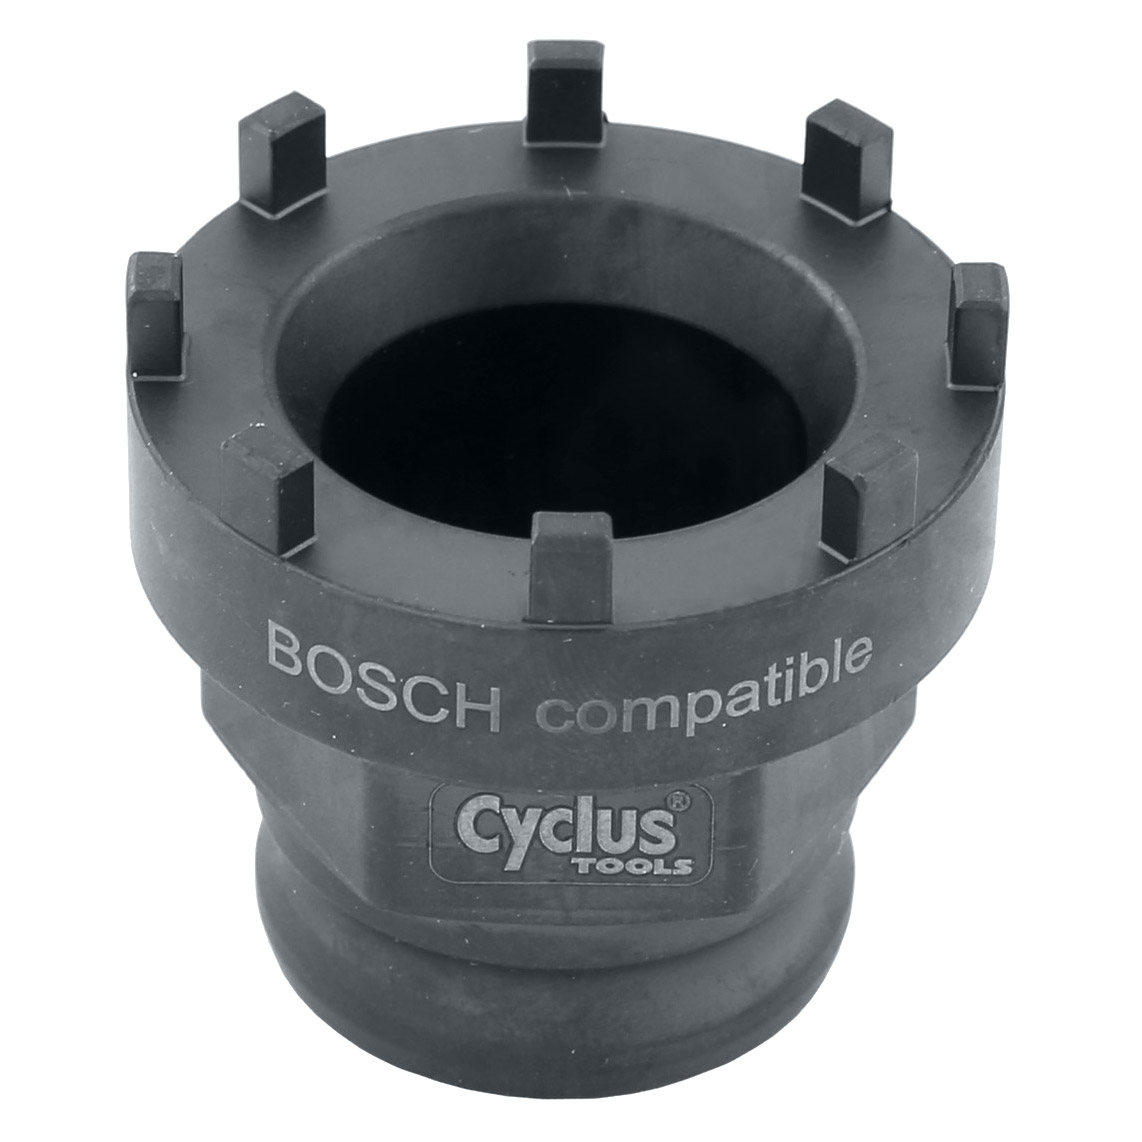 Cyclus Lockring-Tool Spider Abzieher für Bosch Generation 3/4